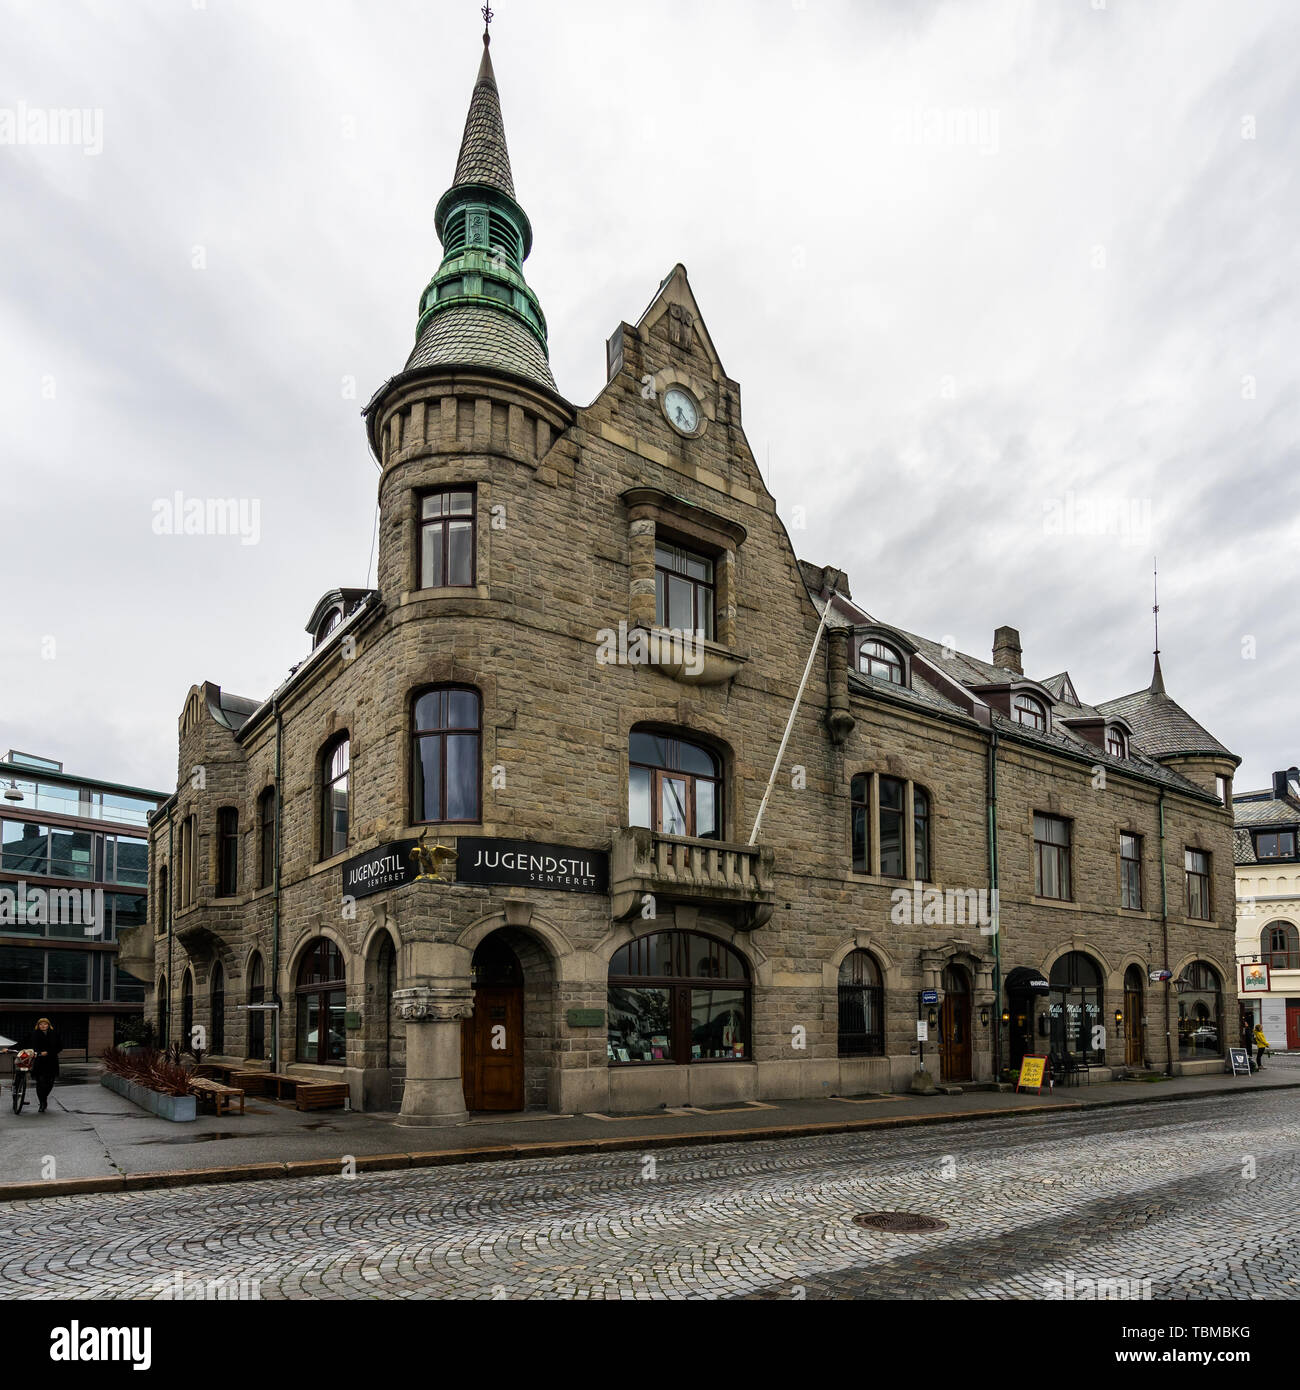 Le Centre d'Art Nouveau (Le Jugendstilsenteret) documents l'histoire de l'architecture unique d'Ålesund. Alesund, More og Romsdal (Norvège), Août 2018 Banque D'Images